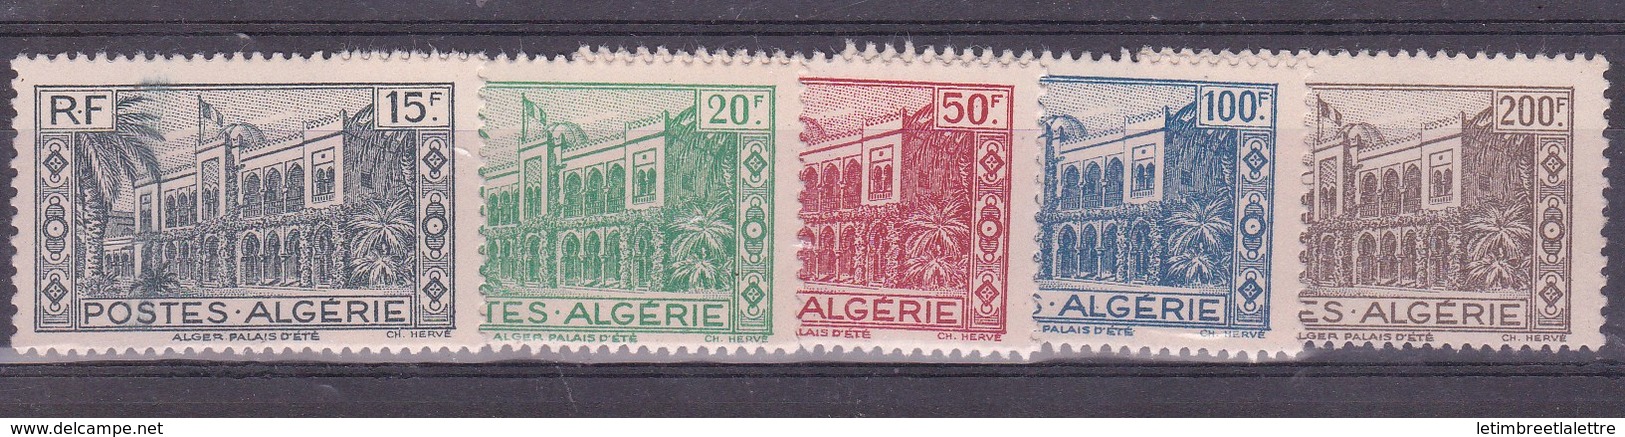 ⭐ Algérie - YT N° 200 à 204 ** - Neuf Sans Charnière - 1944 ⭐ - Neufs